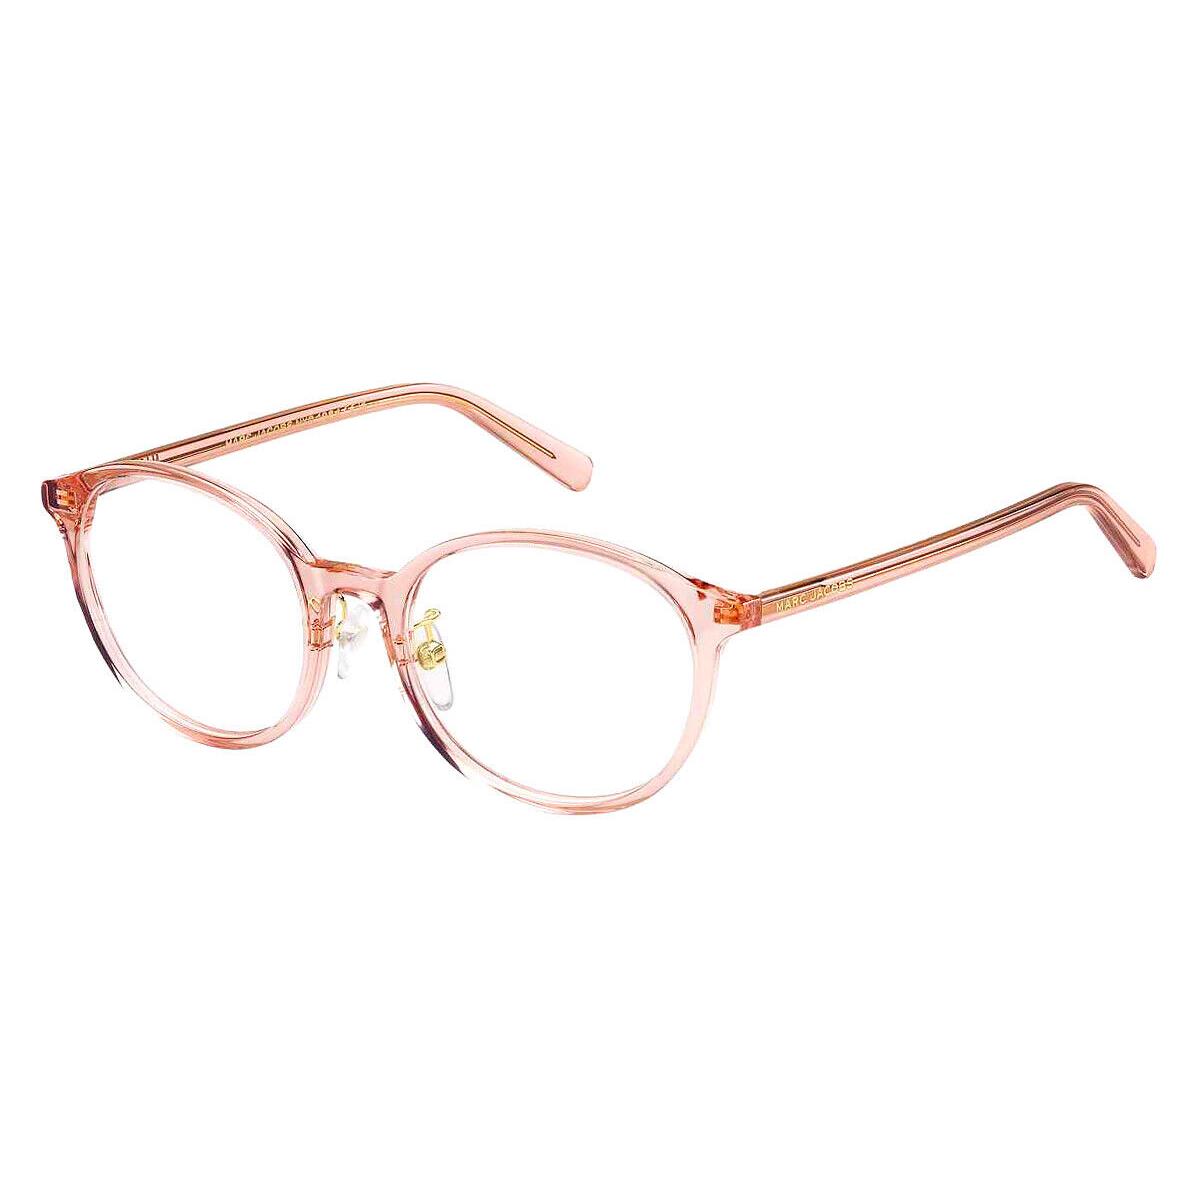 Marc Jacobs Mjb Eyeglasses Women Pink 51mm - Frame: Pink, Lens: Demo